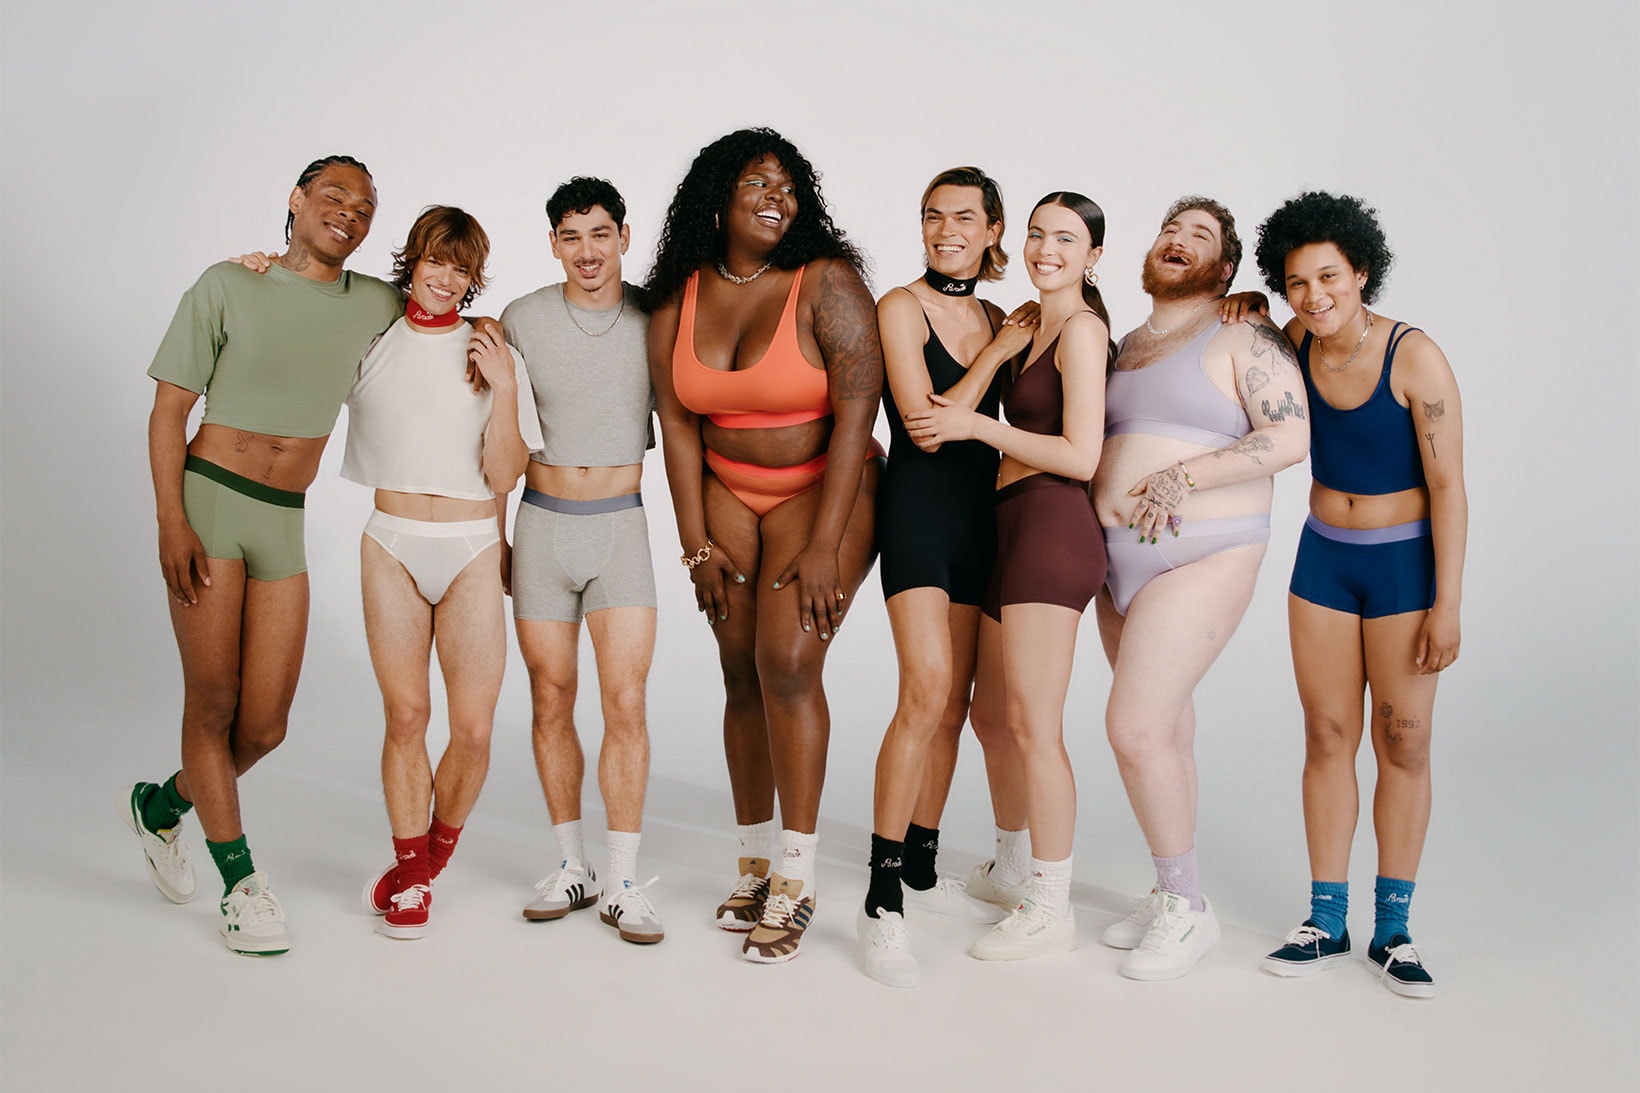 Gender neutral underwear launched